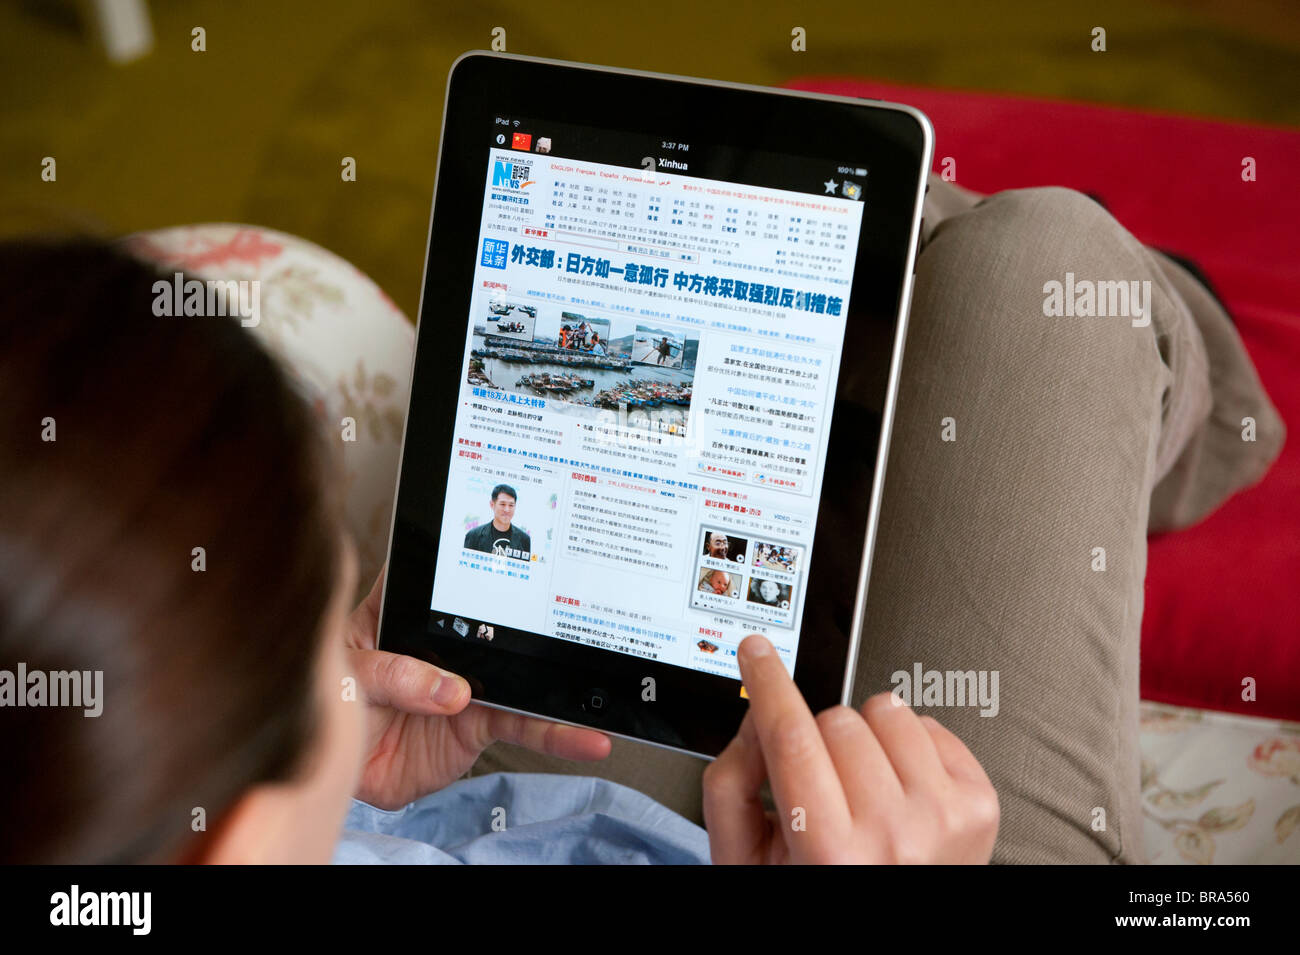 Femme à l'aide de l'ordinateur tablette iPad à la maison pour lire un journal chinois Xinhua Banque D'Images